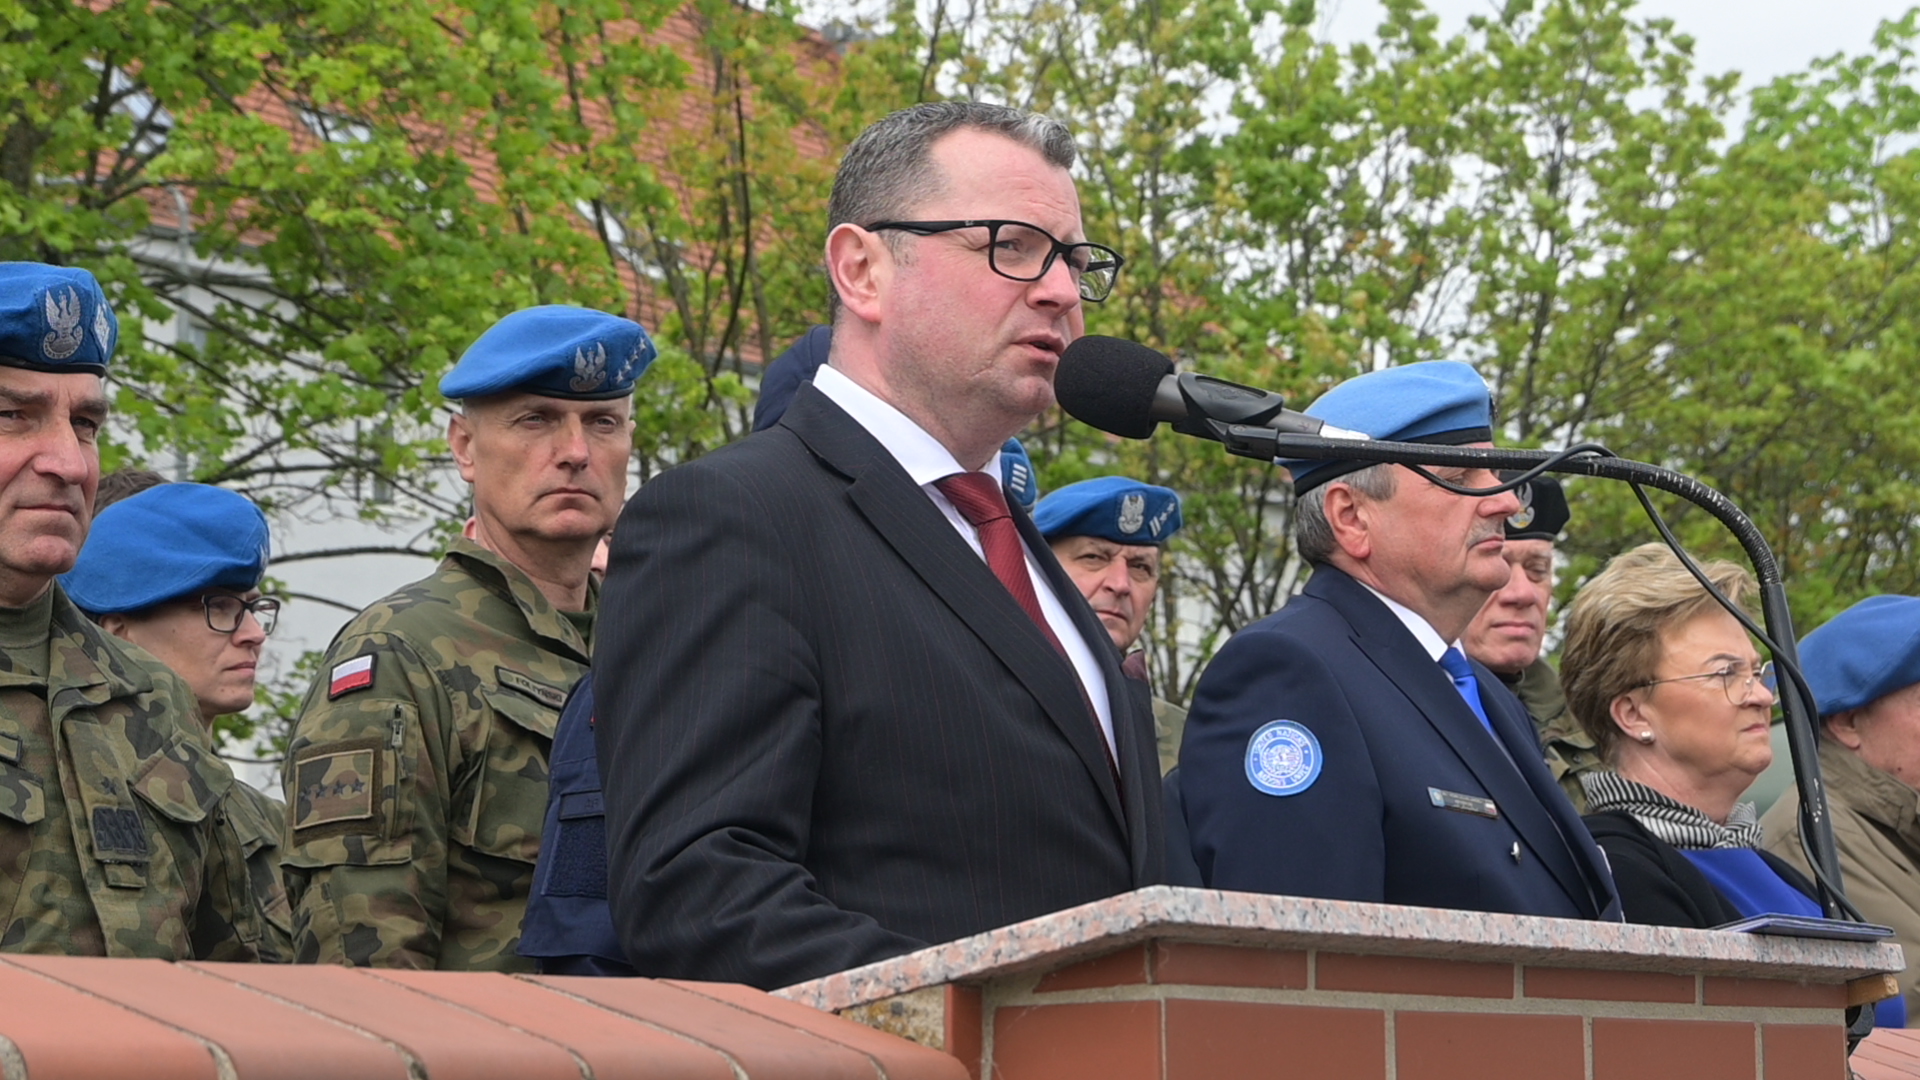 Prezydent Goliński przemawia, na drugim planie przedstawiciele wojska